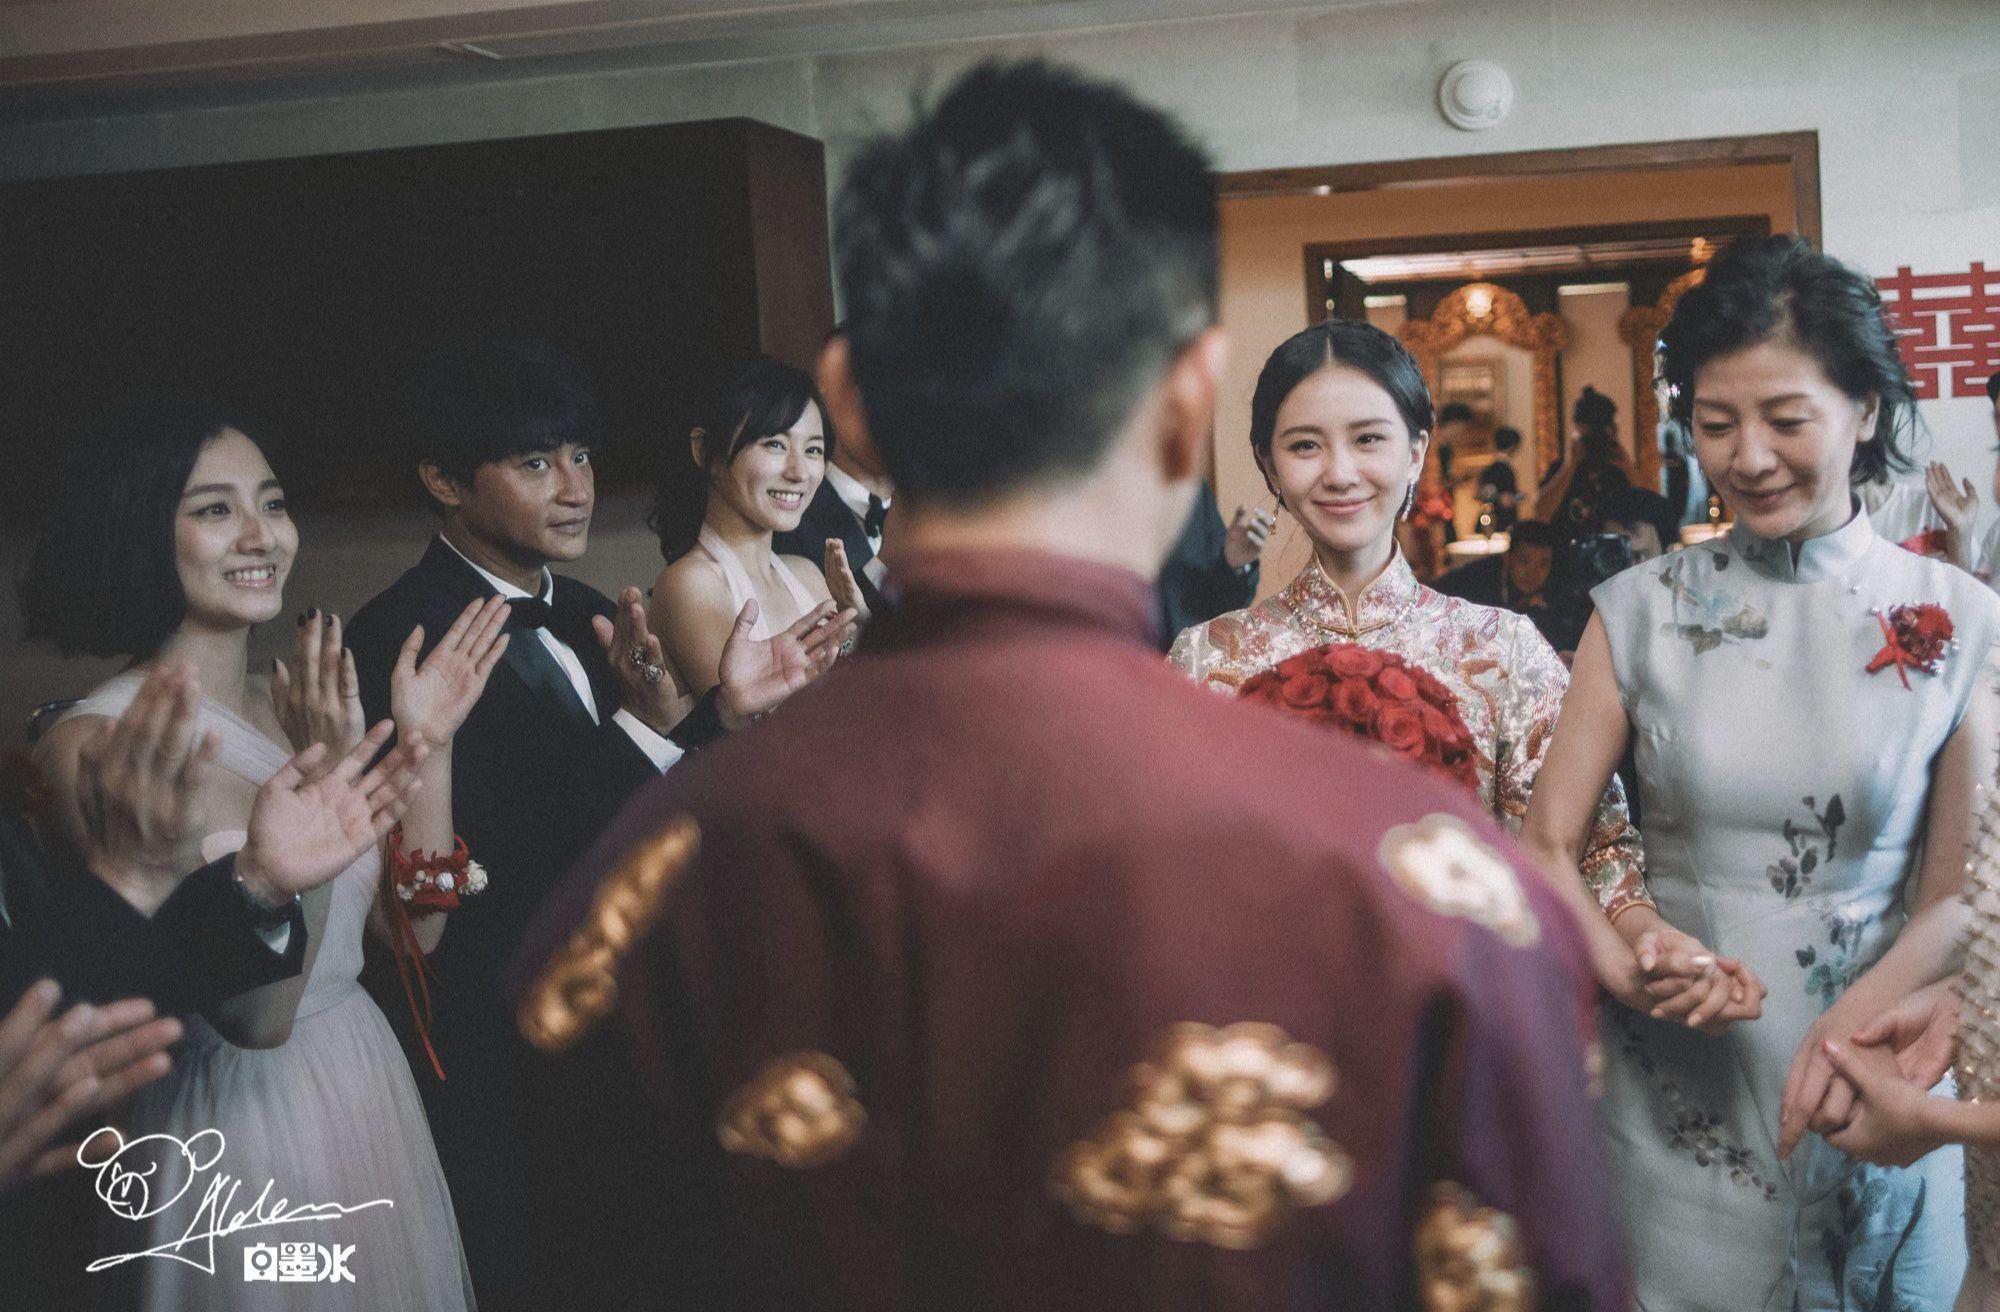 吴奇隆刘诗诗巴厘岛大婚 小虎队合体唱《爱》迎亲|界面新闻 · 图片